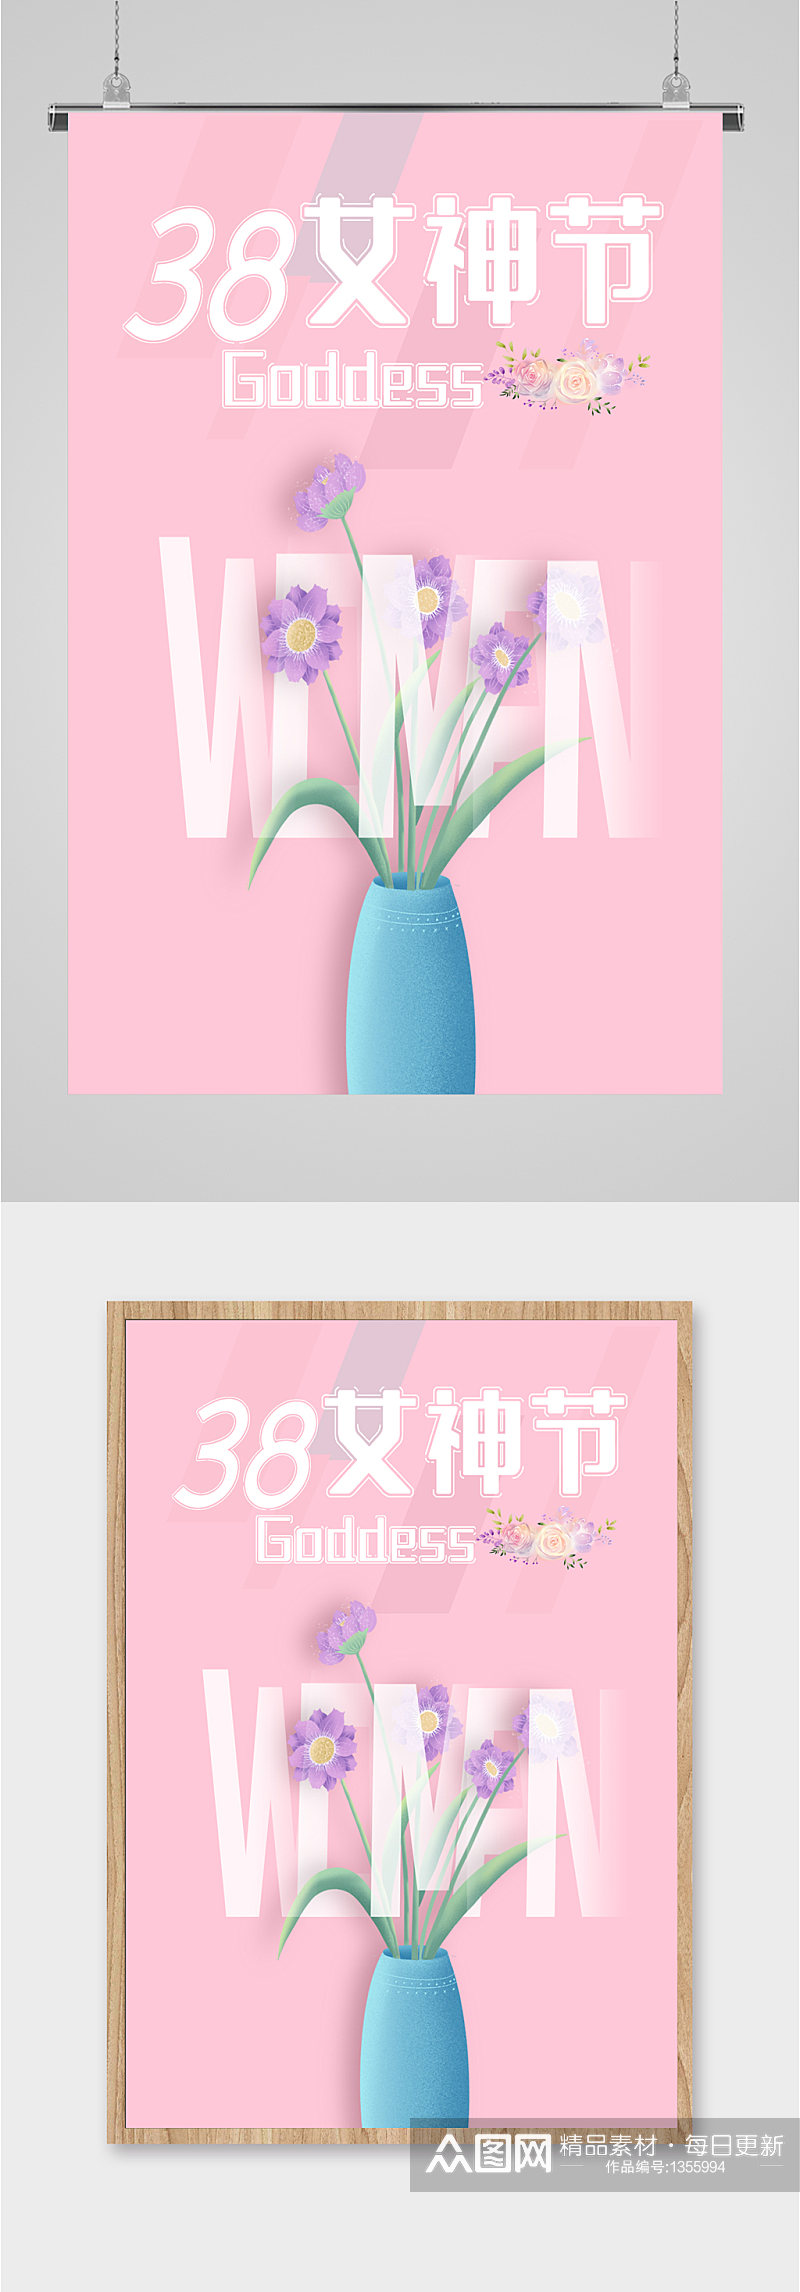 38女神节节日宣传海报素材